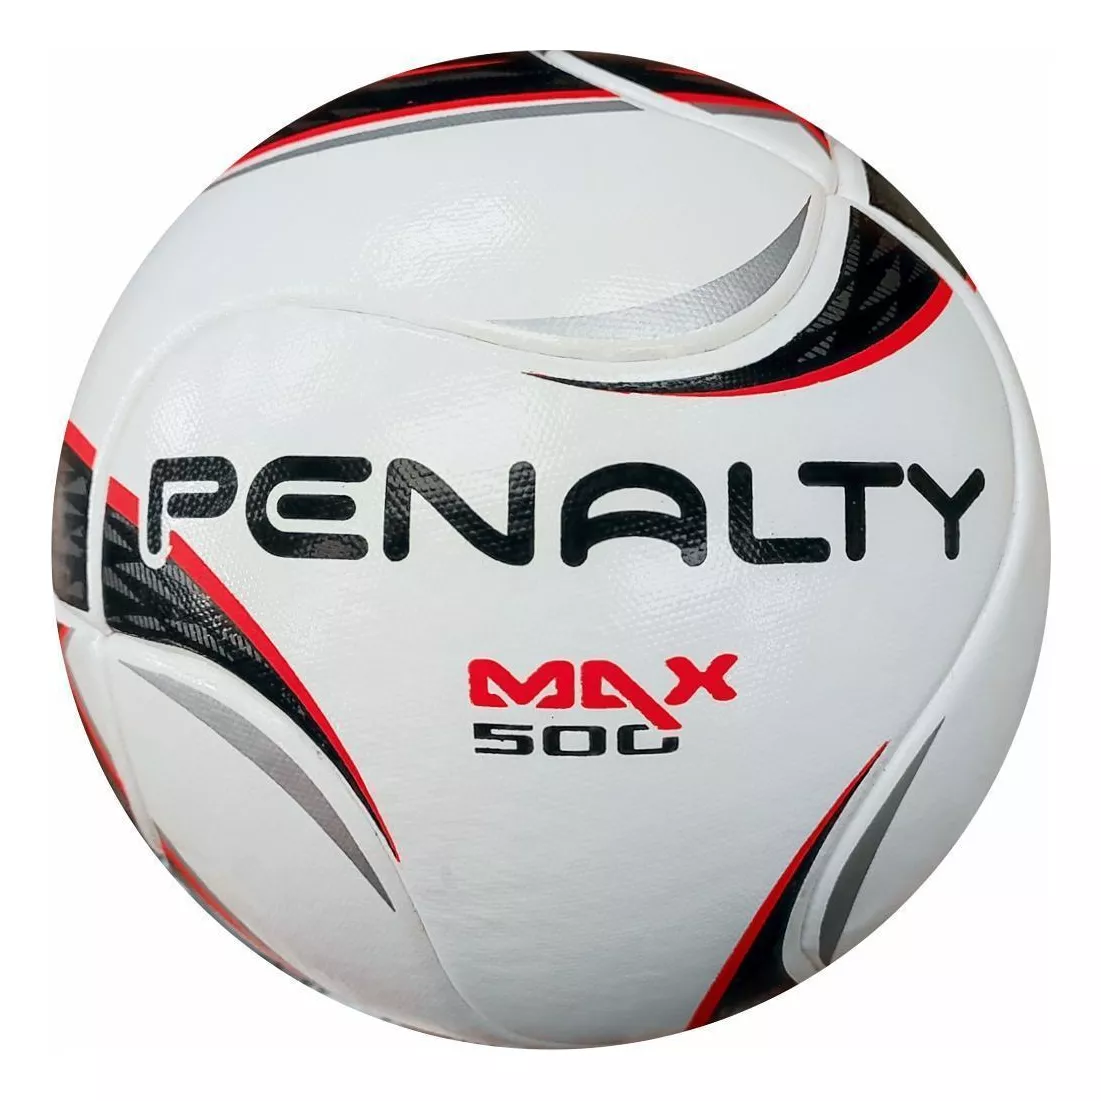 Terceira imagem para pesquisa de bola de futsal penalty